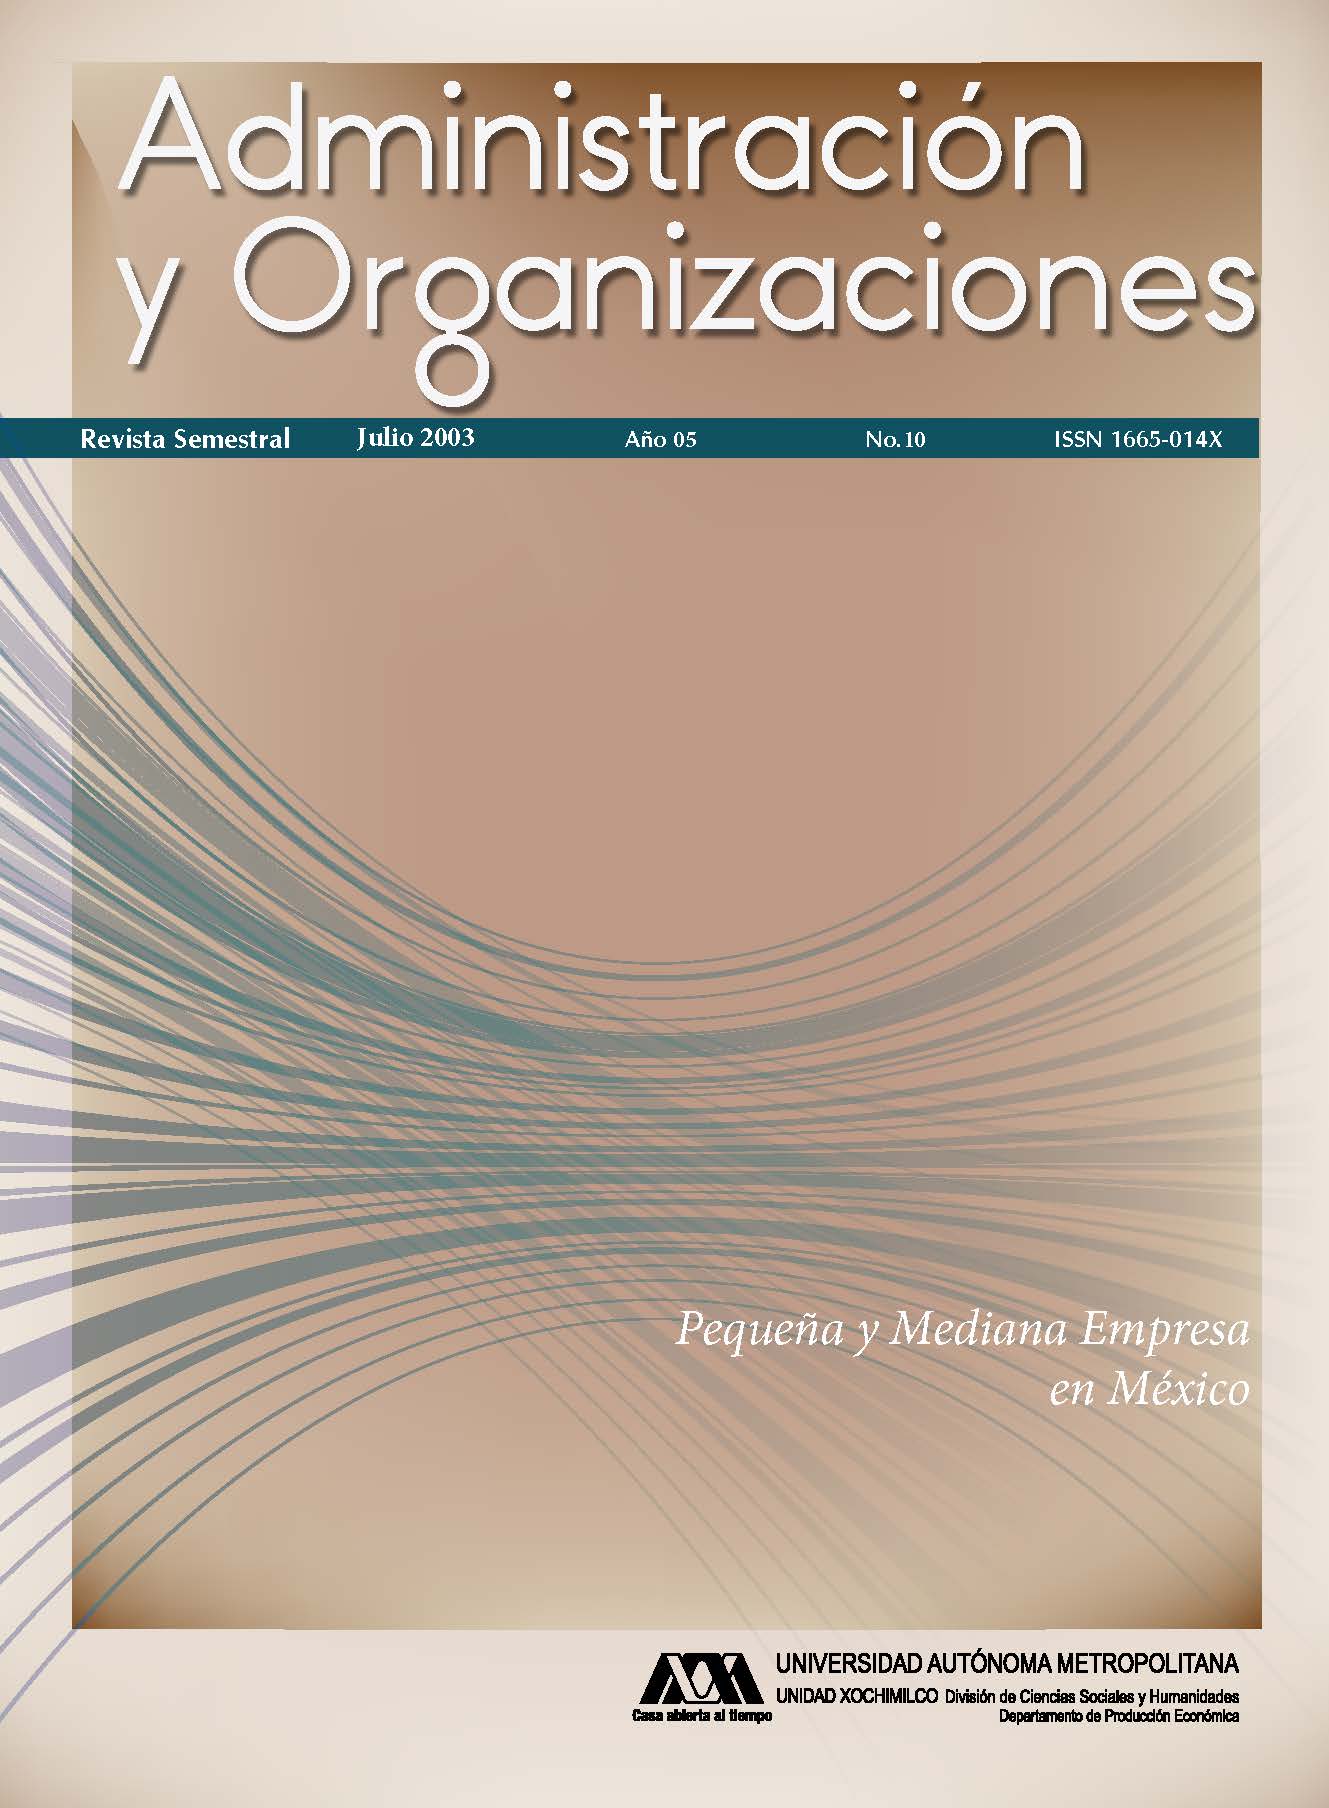 					Ver Vol. 5 Núm. 10 (5): Administración y Organizaciones
				